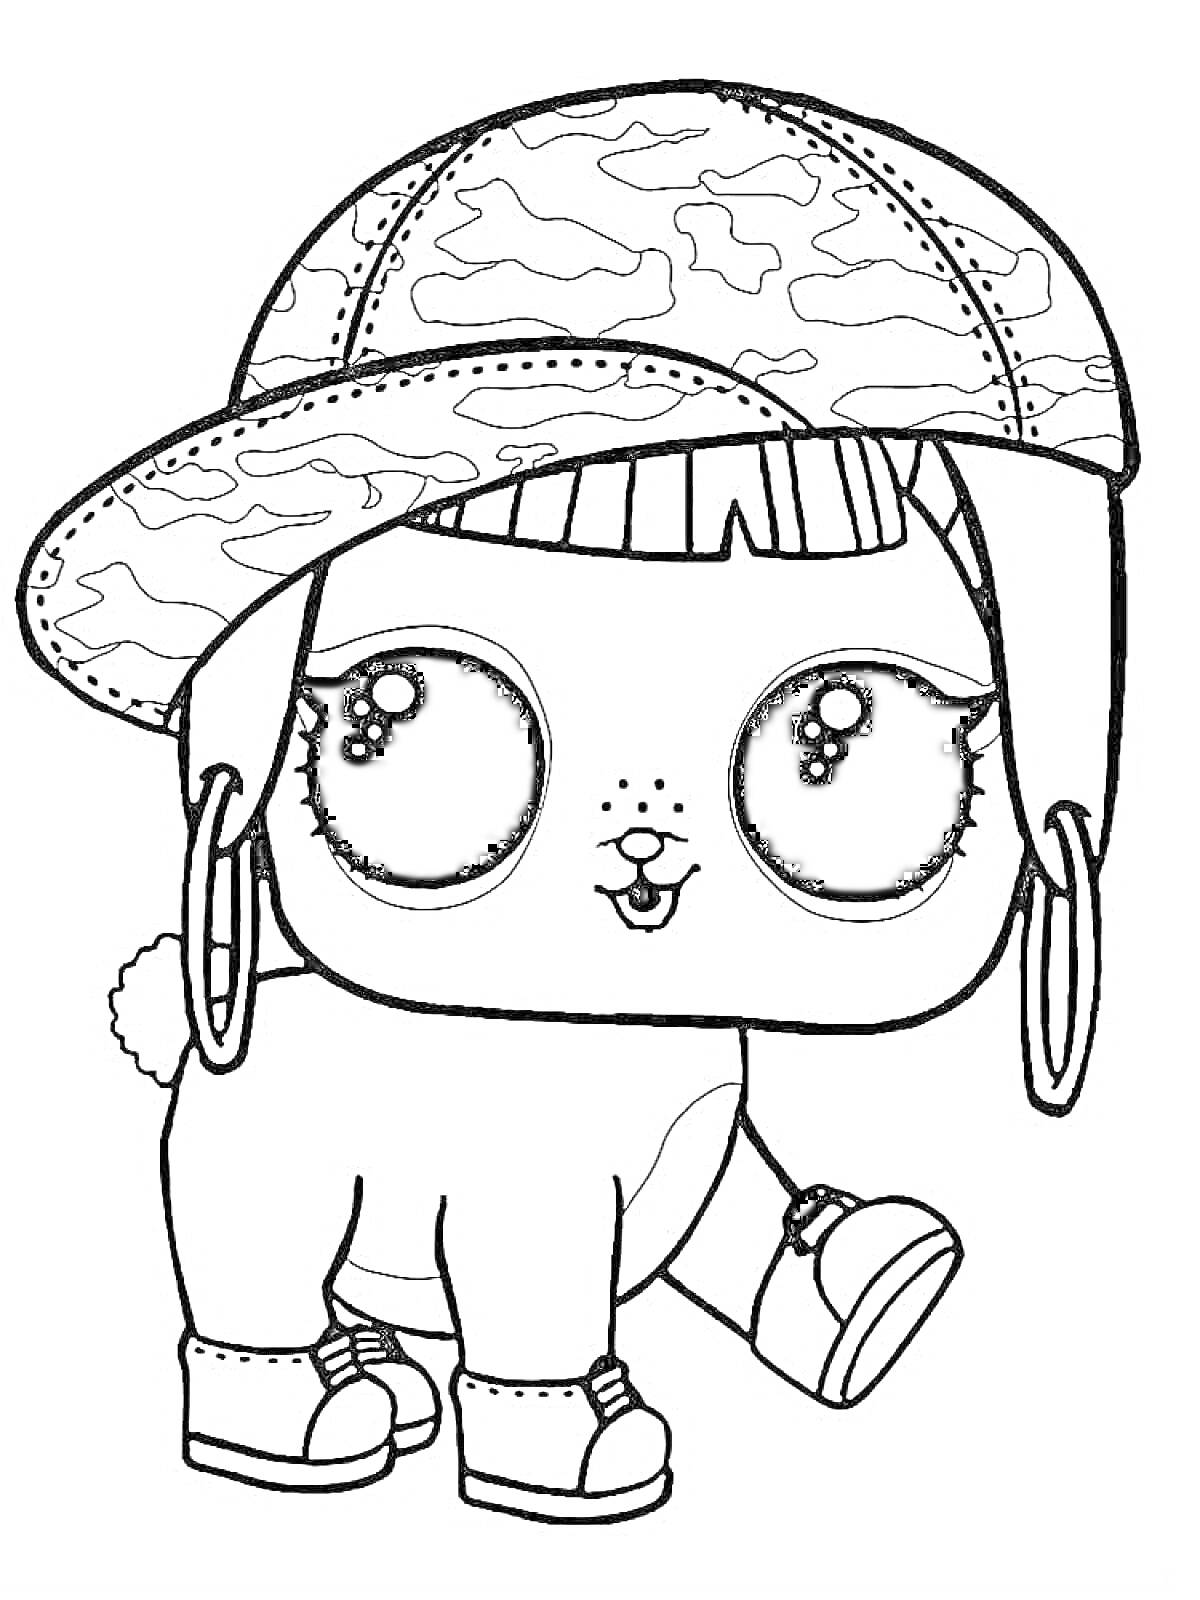 Раскраска ЛОЛ питомец с большими глазами, шапкой с камуфляжным узором, кроссовками и хвостиком в форме помпона.